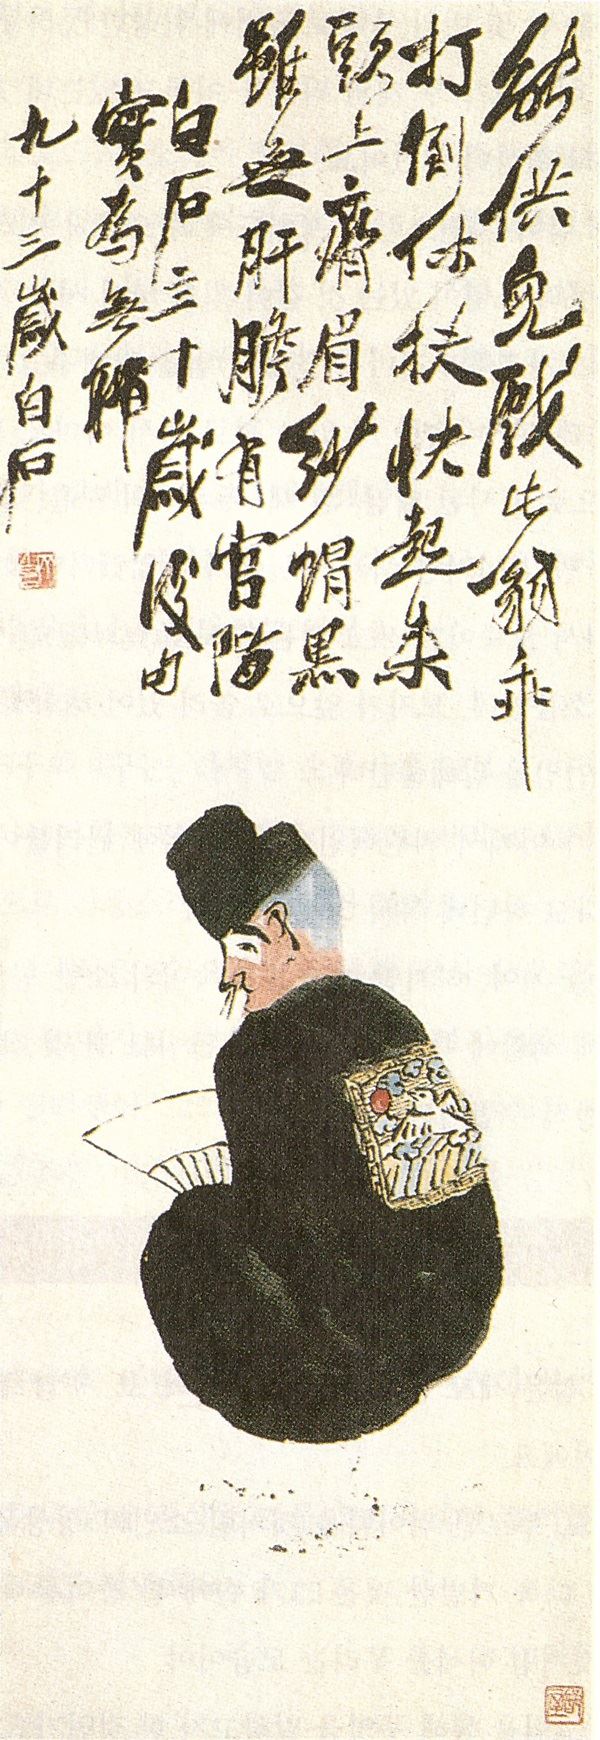 363 제백석(齊白石 1864~1957) 부도옹(不倒翁) 116+41.5 북경 중국미술관